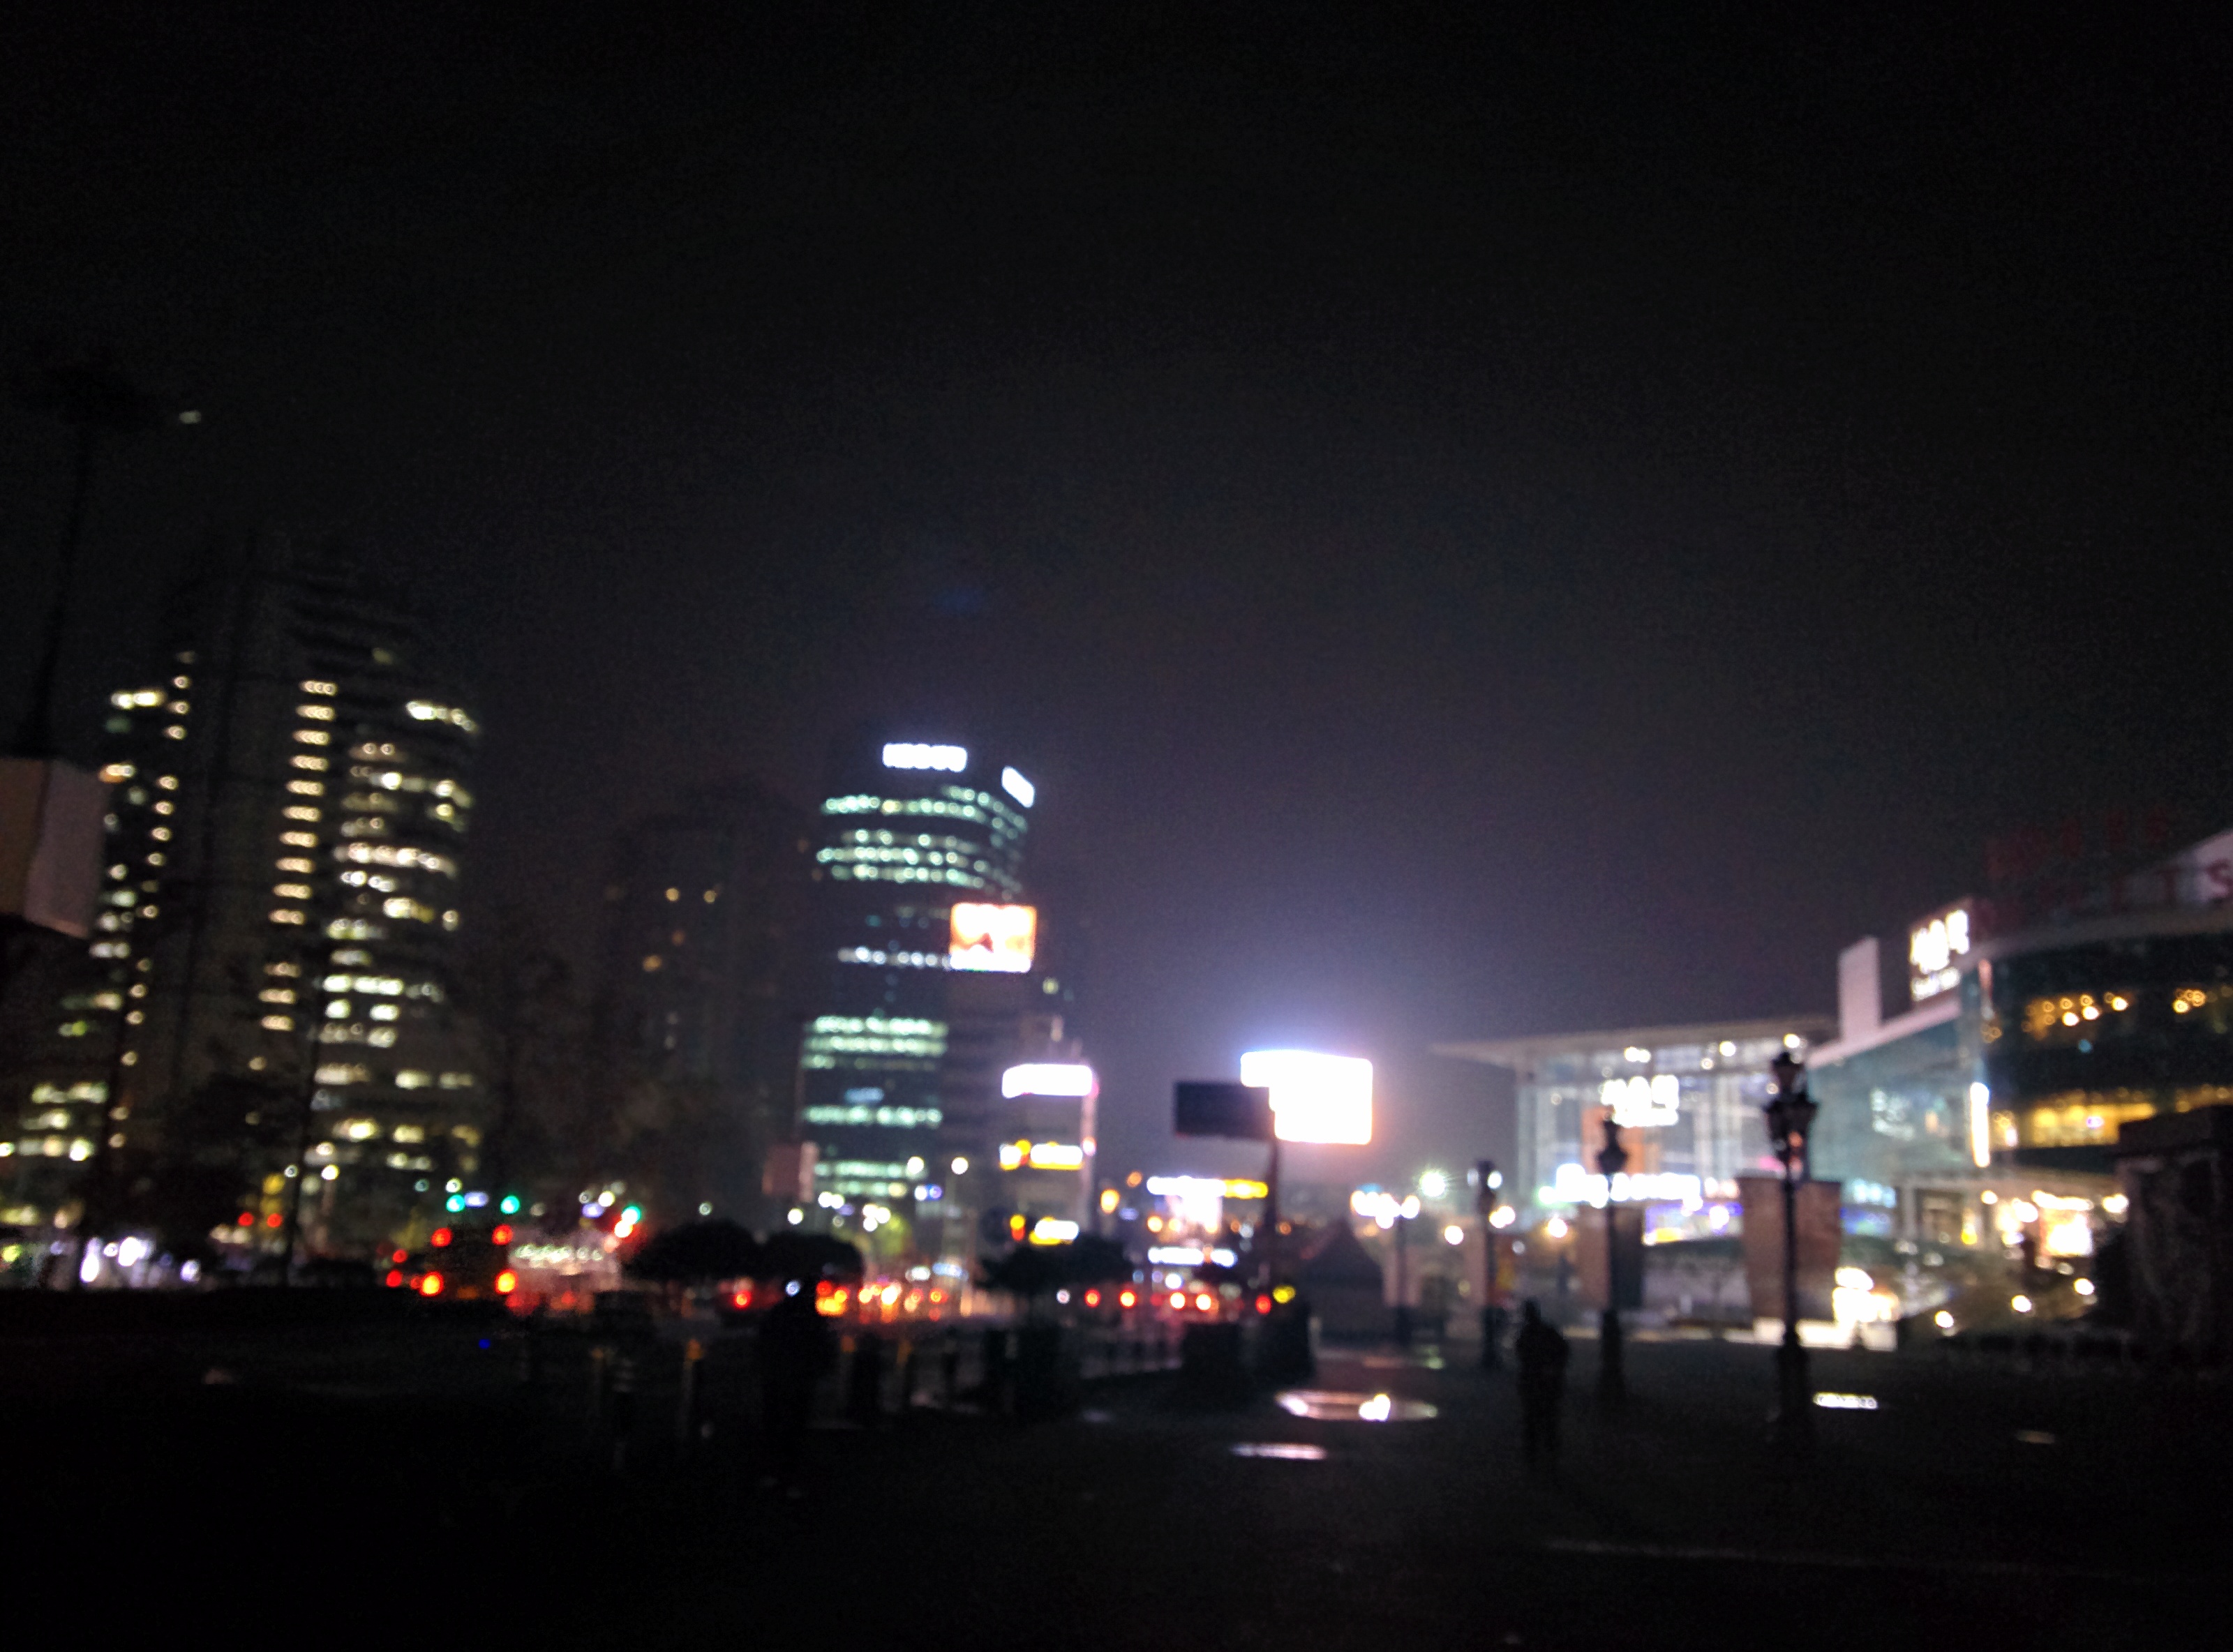 IMG_20151110_062250.jpg 새벽의 서울역 풍경